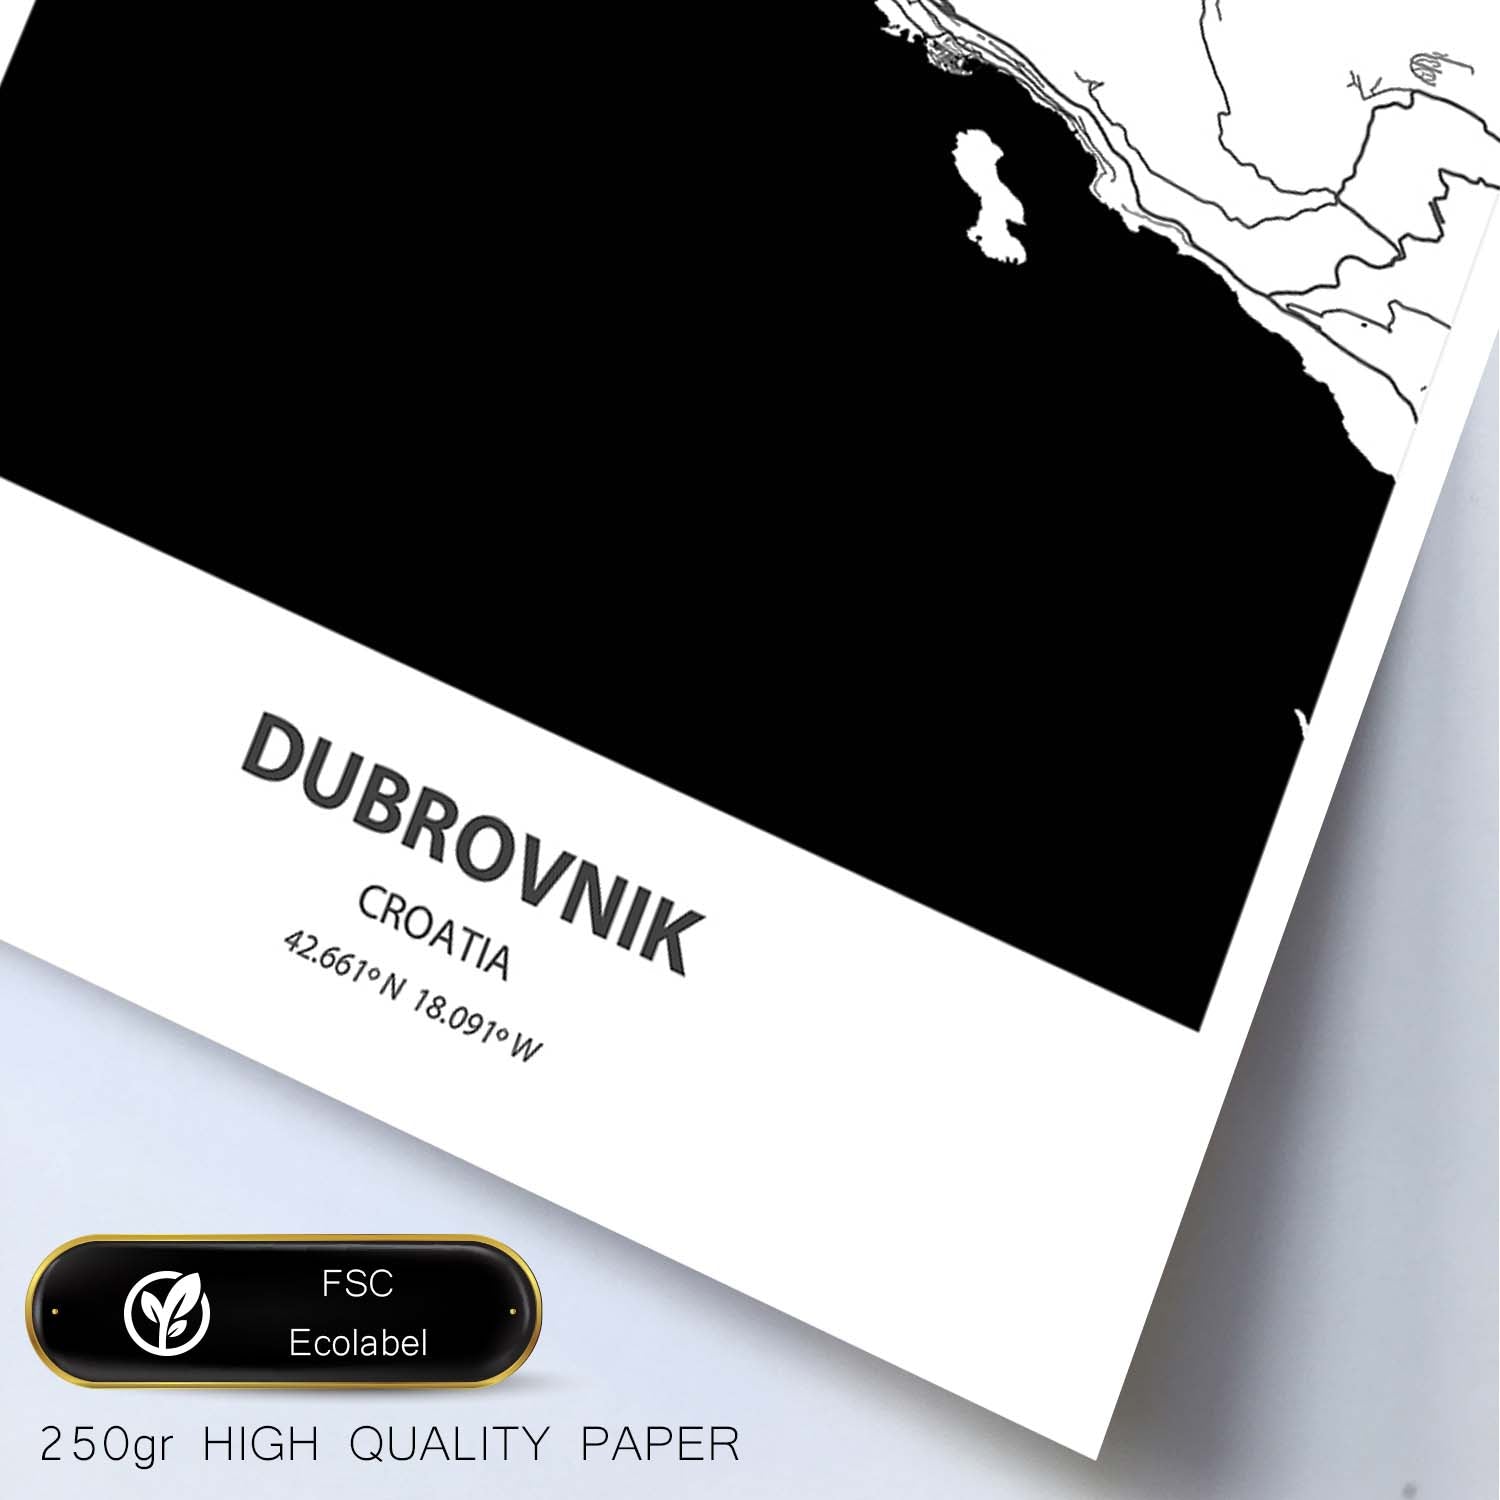 Poster con mapa de Dubrokniv - Croacia. Láminas de ciudades de Europa con mares y ríos en color negro.-Artwork-Nacnic-Nacnic Estudio SL